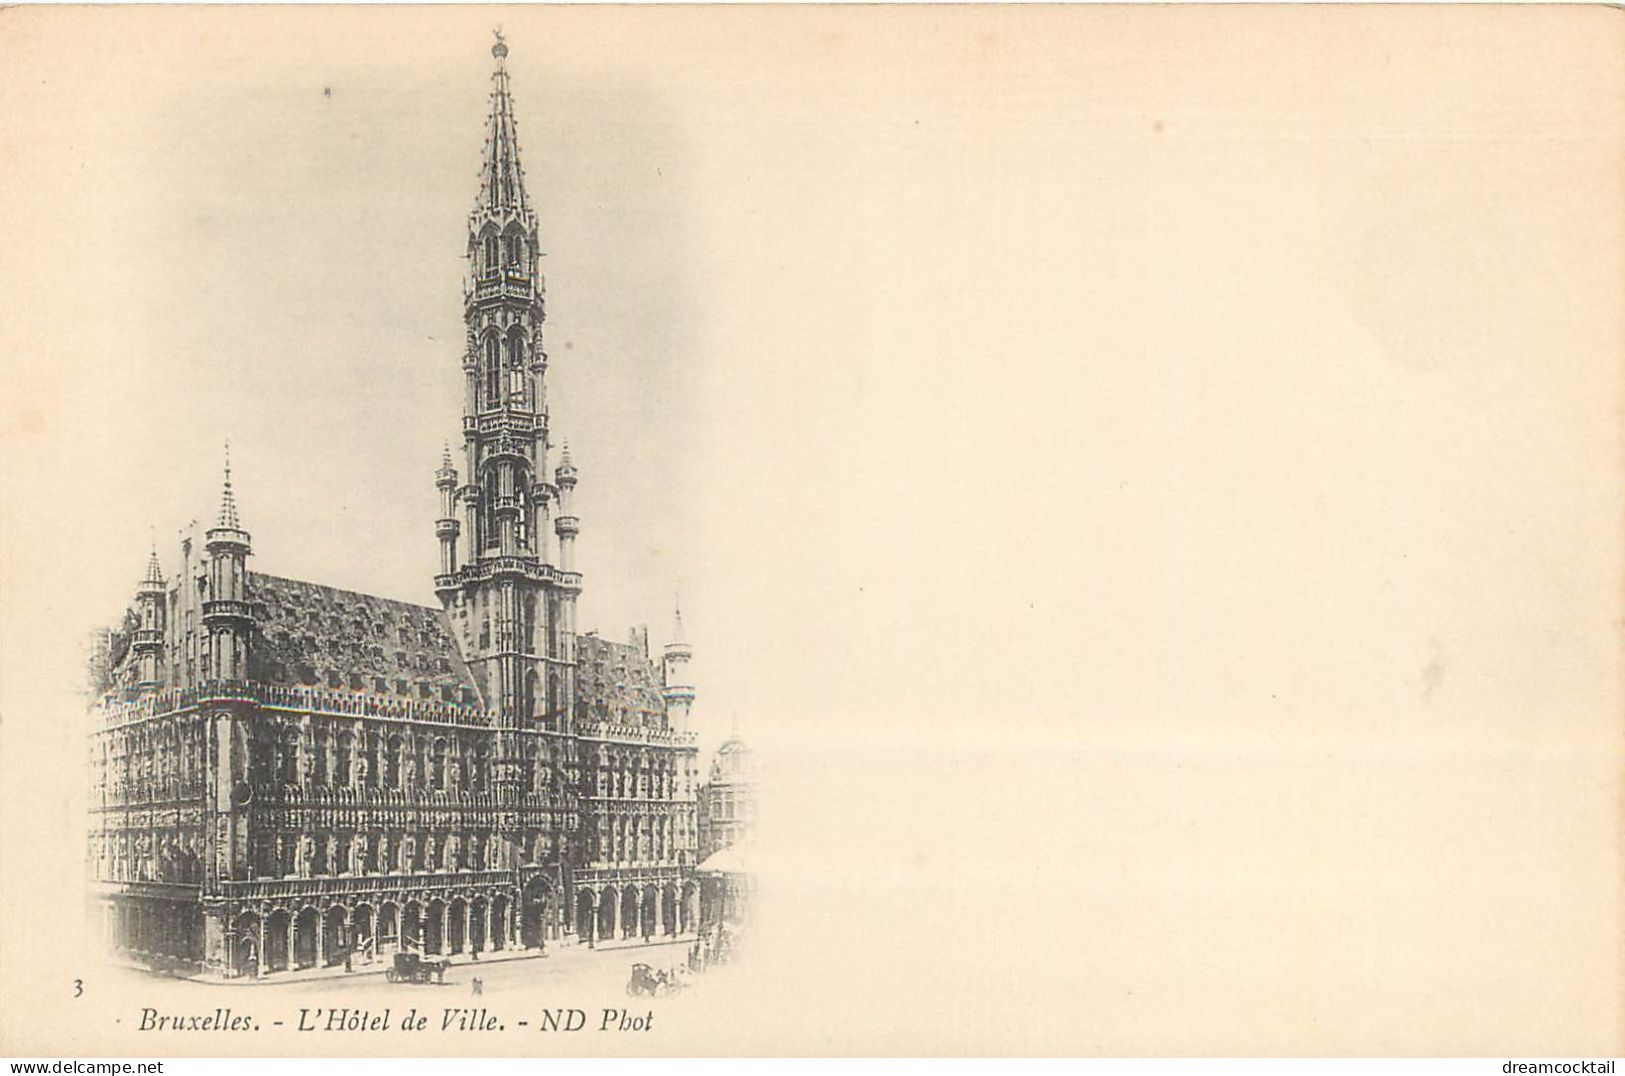 Superbe lot de 9 cpa BRUXELLES vers 1900 Anspach, Porte Hal, Congrès, Bourse, Cathédrale, Palais Roi, Hôtel de Ville